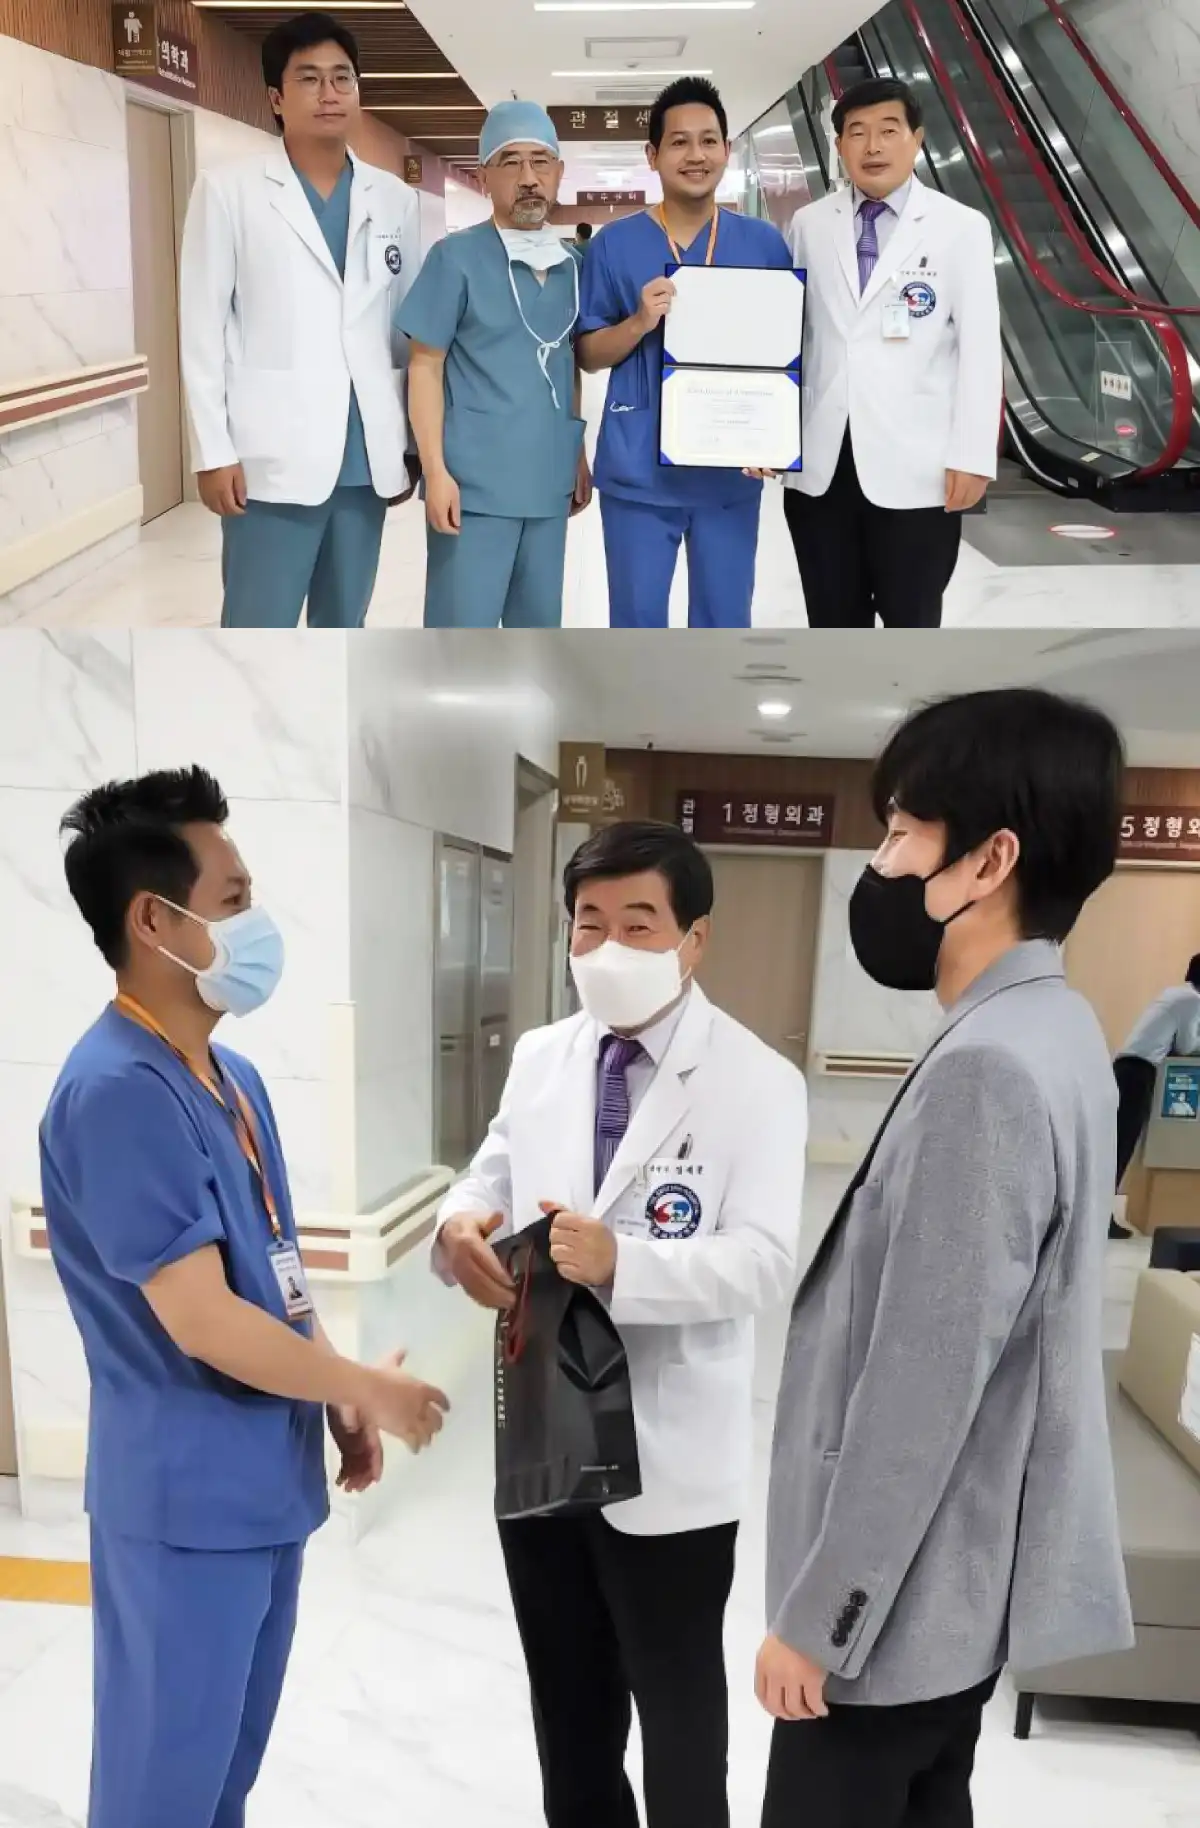 “รพ.เอส” ส่งแพทย์เข้าร่วมเวทีสากล ตอกย้ำแบรนด์เบอร์ 1 เรื่องรักษาโรคกระดูกของไทย HealthServ